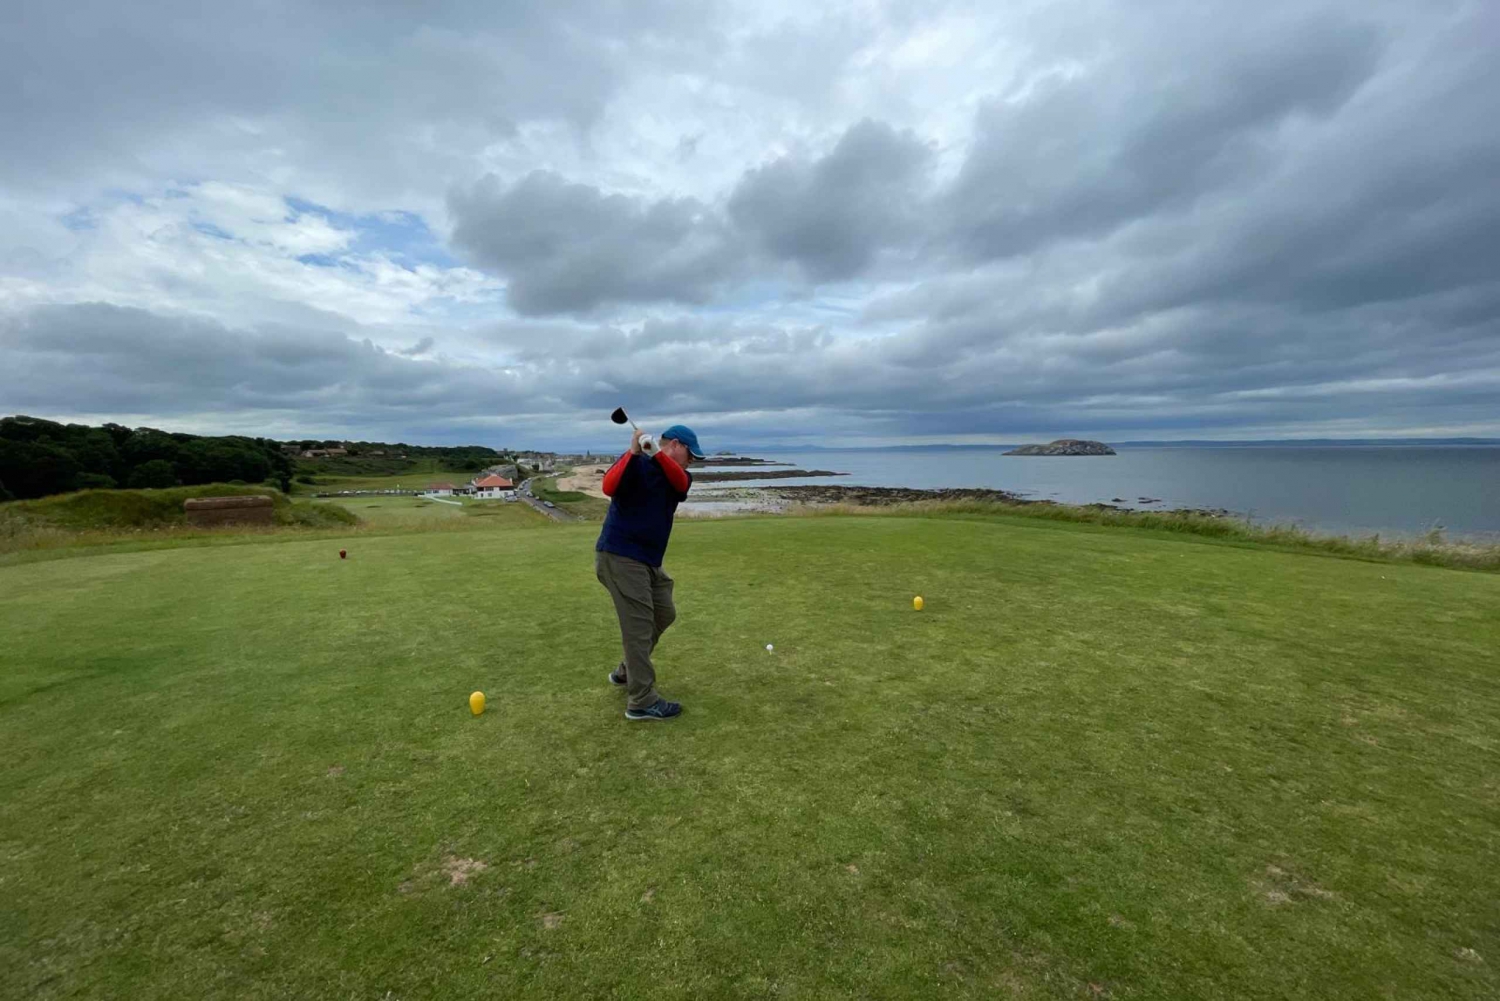 Skotska Greens: Privat dagsutflykt till lyxig golfbana